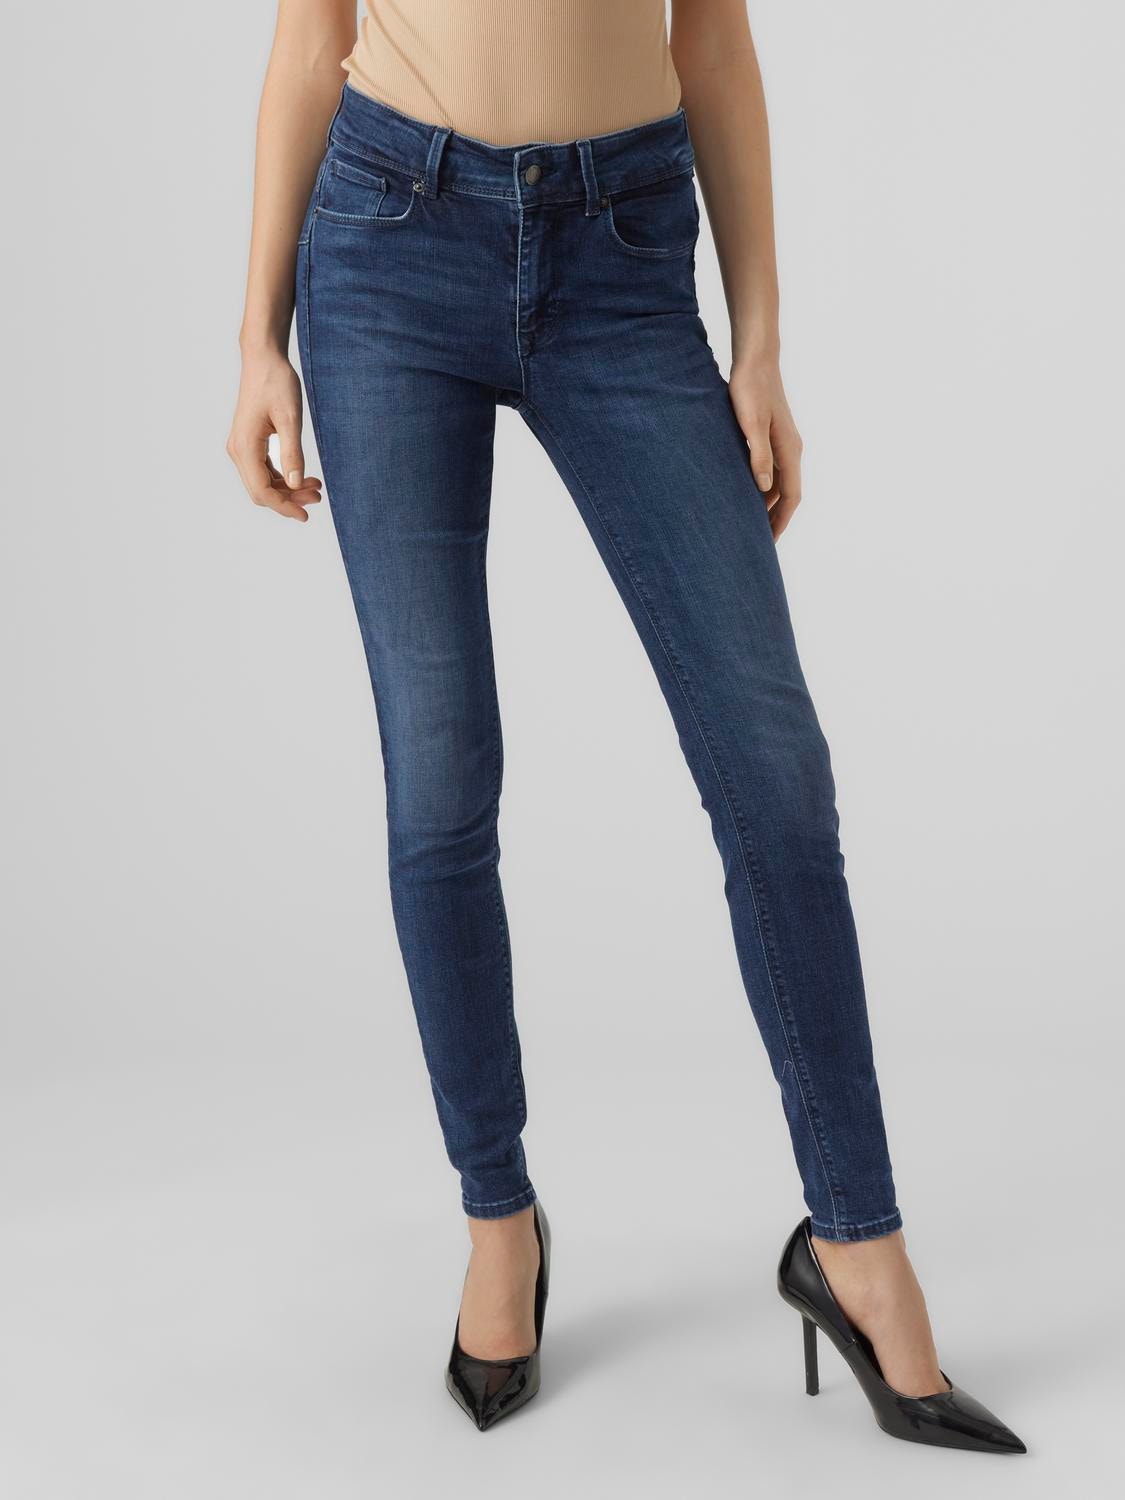 Vero Moda VMEMBRACE Skinny Fit Jeans -Dark Blue Denim - 10285018